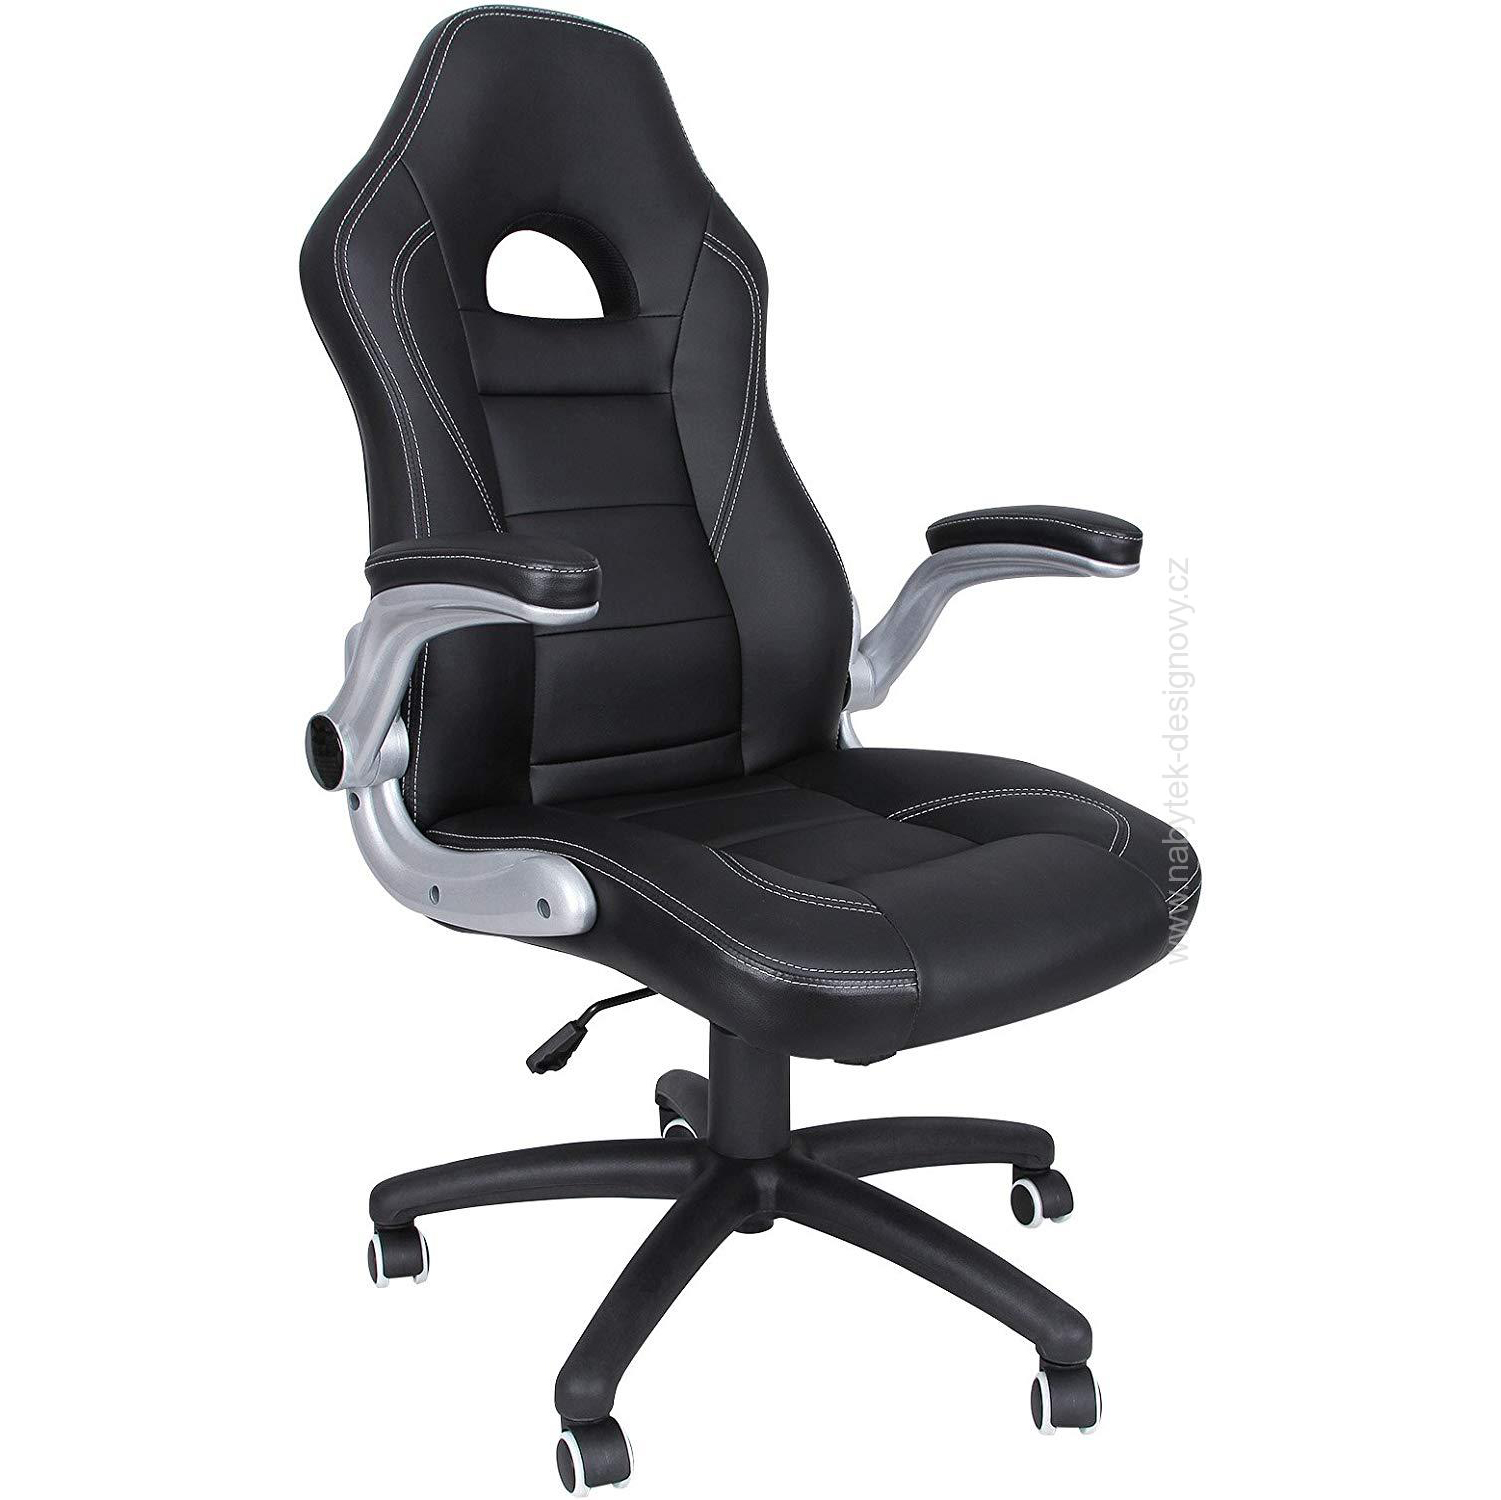 Kancelářská židle Racing Black, pro PC stoly, racing design, nosnost 150kg